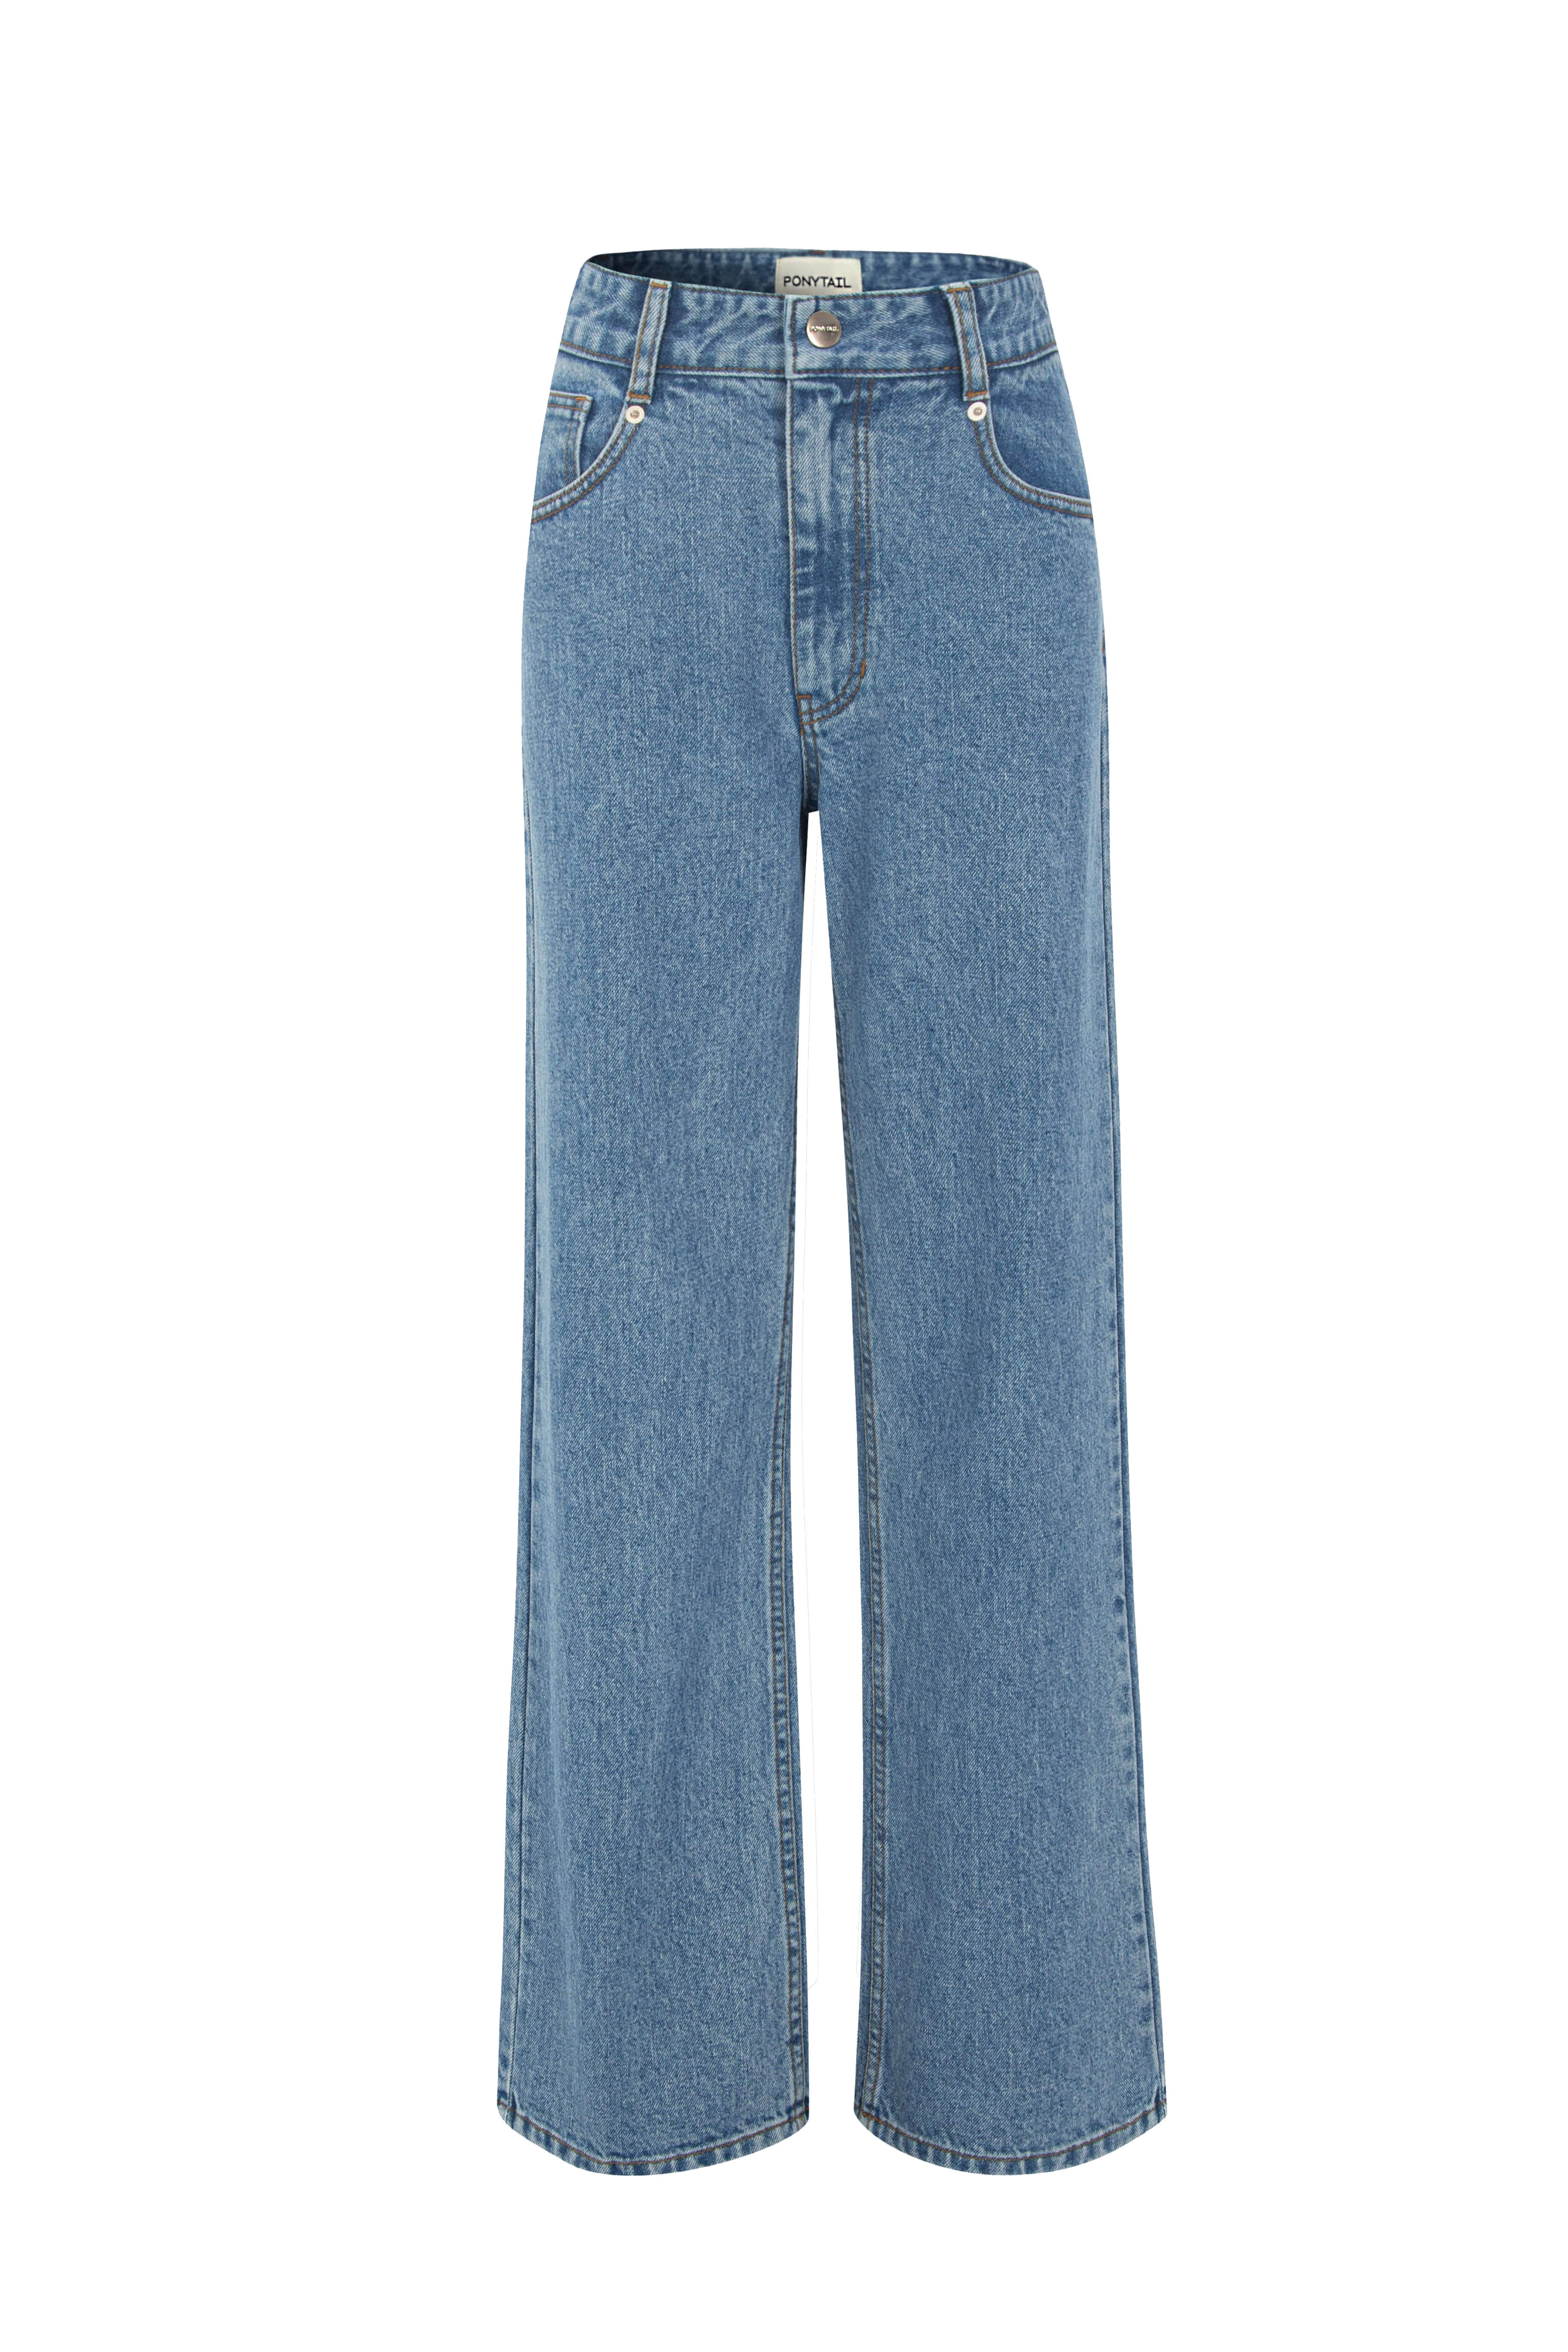 [2차 Pre-Order 5/2 오픈 예정] BELLA Loose-fit Jeans (Medium Blue) - 포니테일